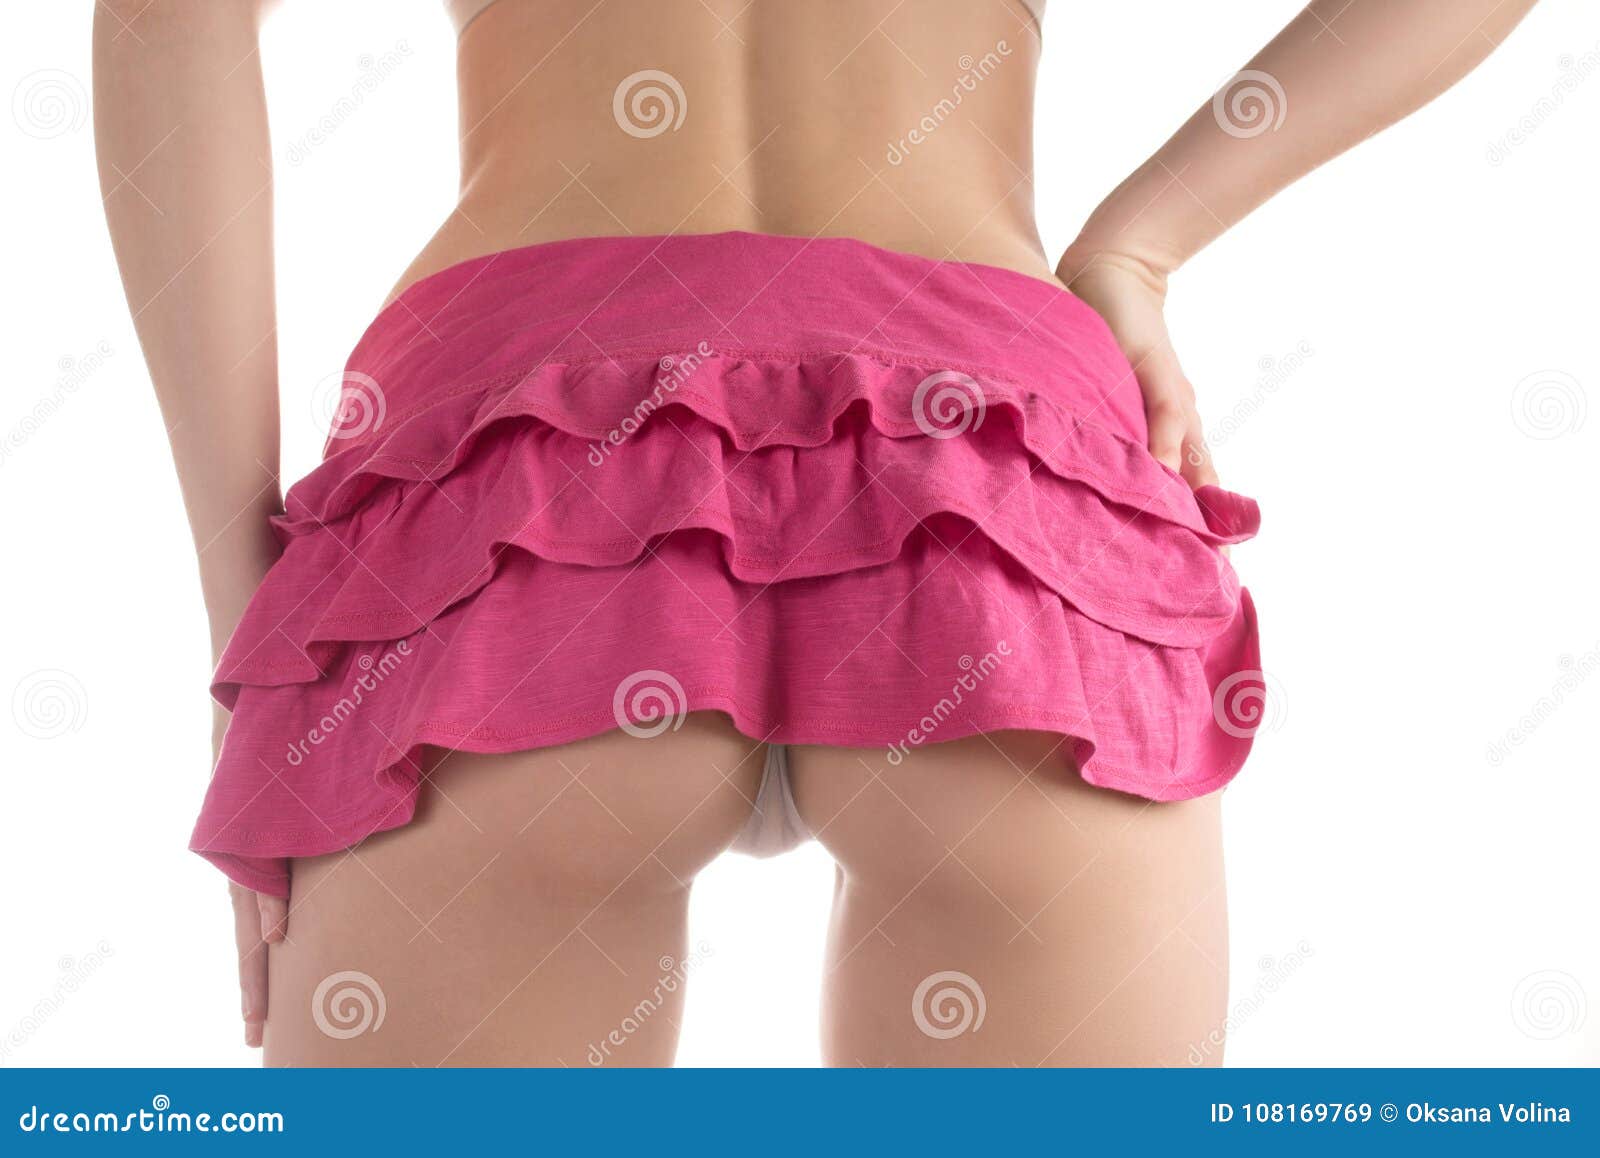 Skirt Ass Pics